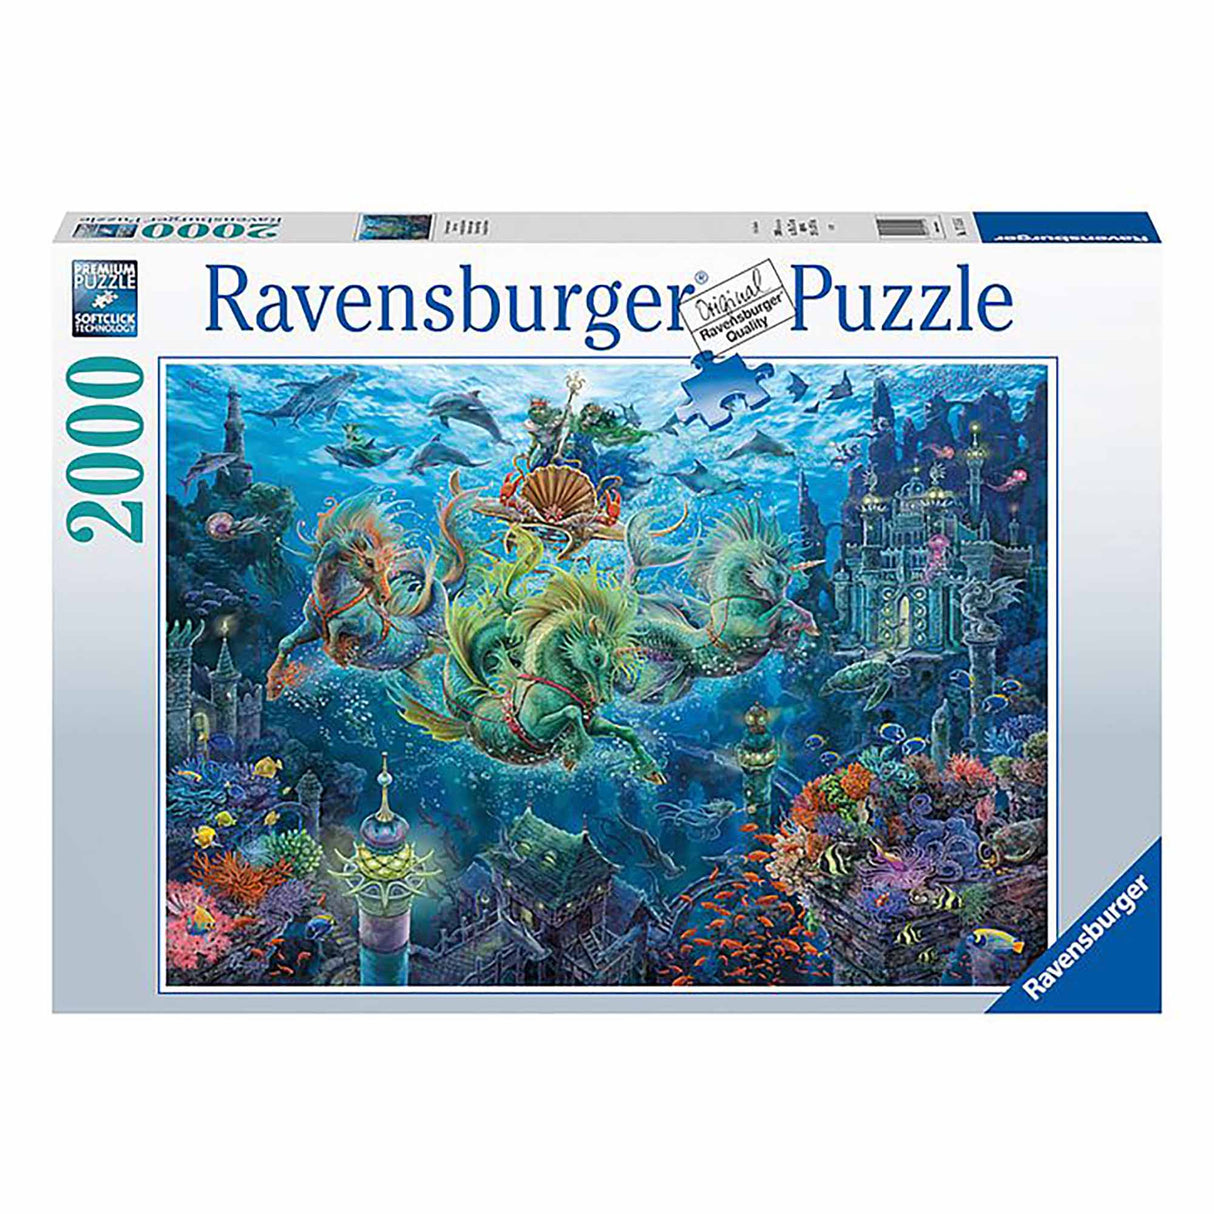 Ravensburger Underwater Magic Puzzle (2000 pieces)